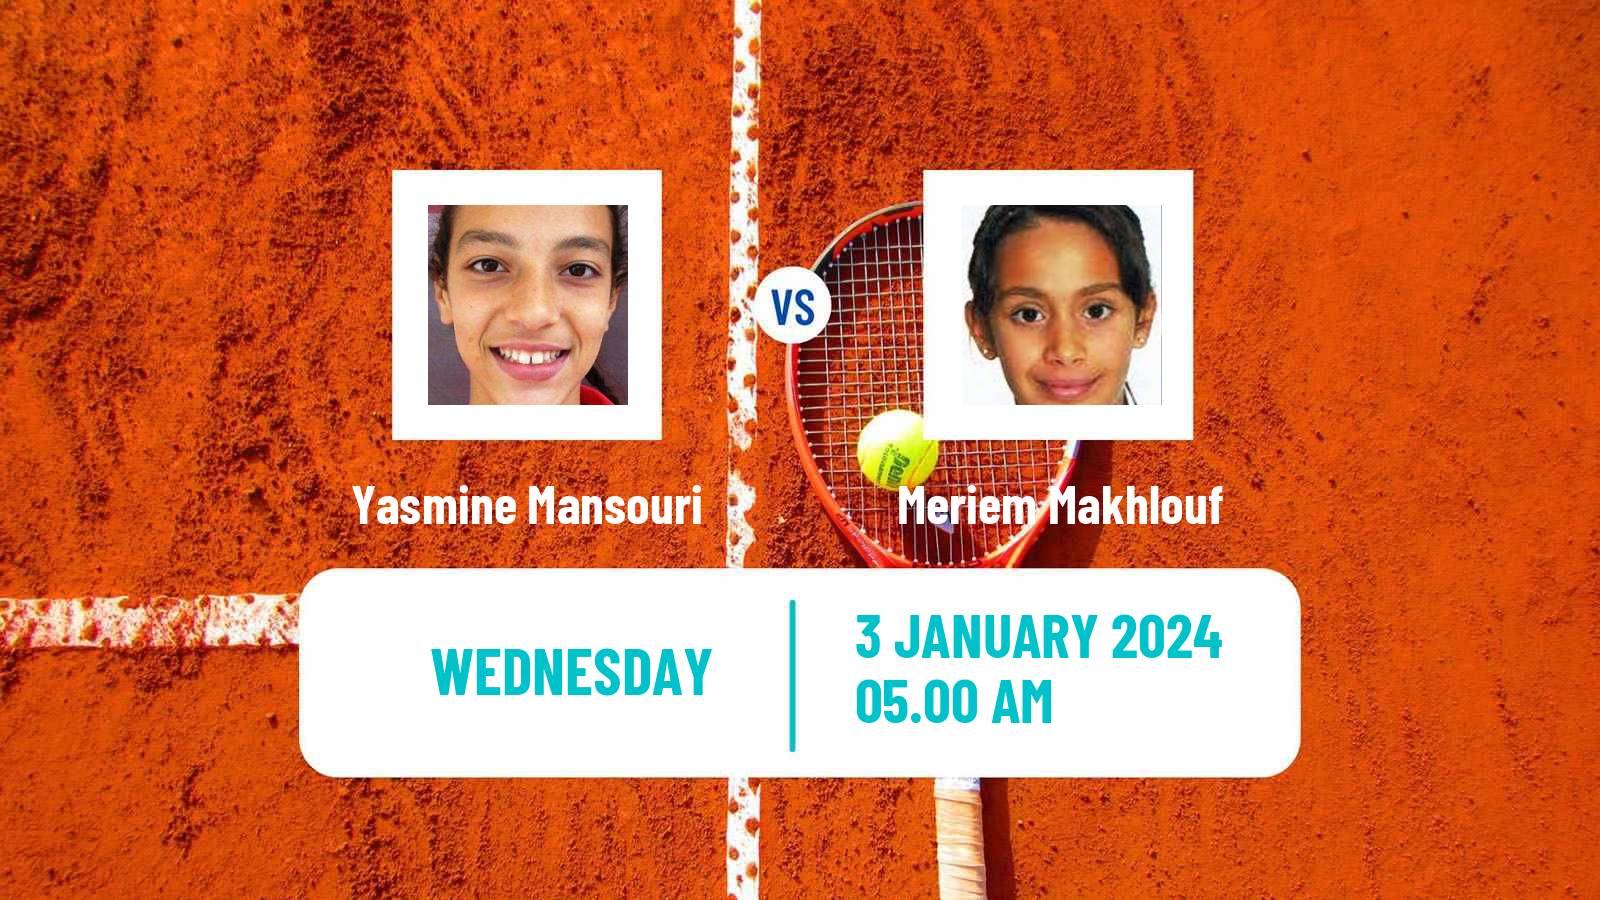 Tennis ITF W15 Monastir Women Yasmine Mansouri - Meriem Makhlouf